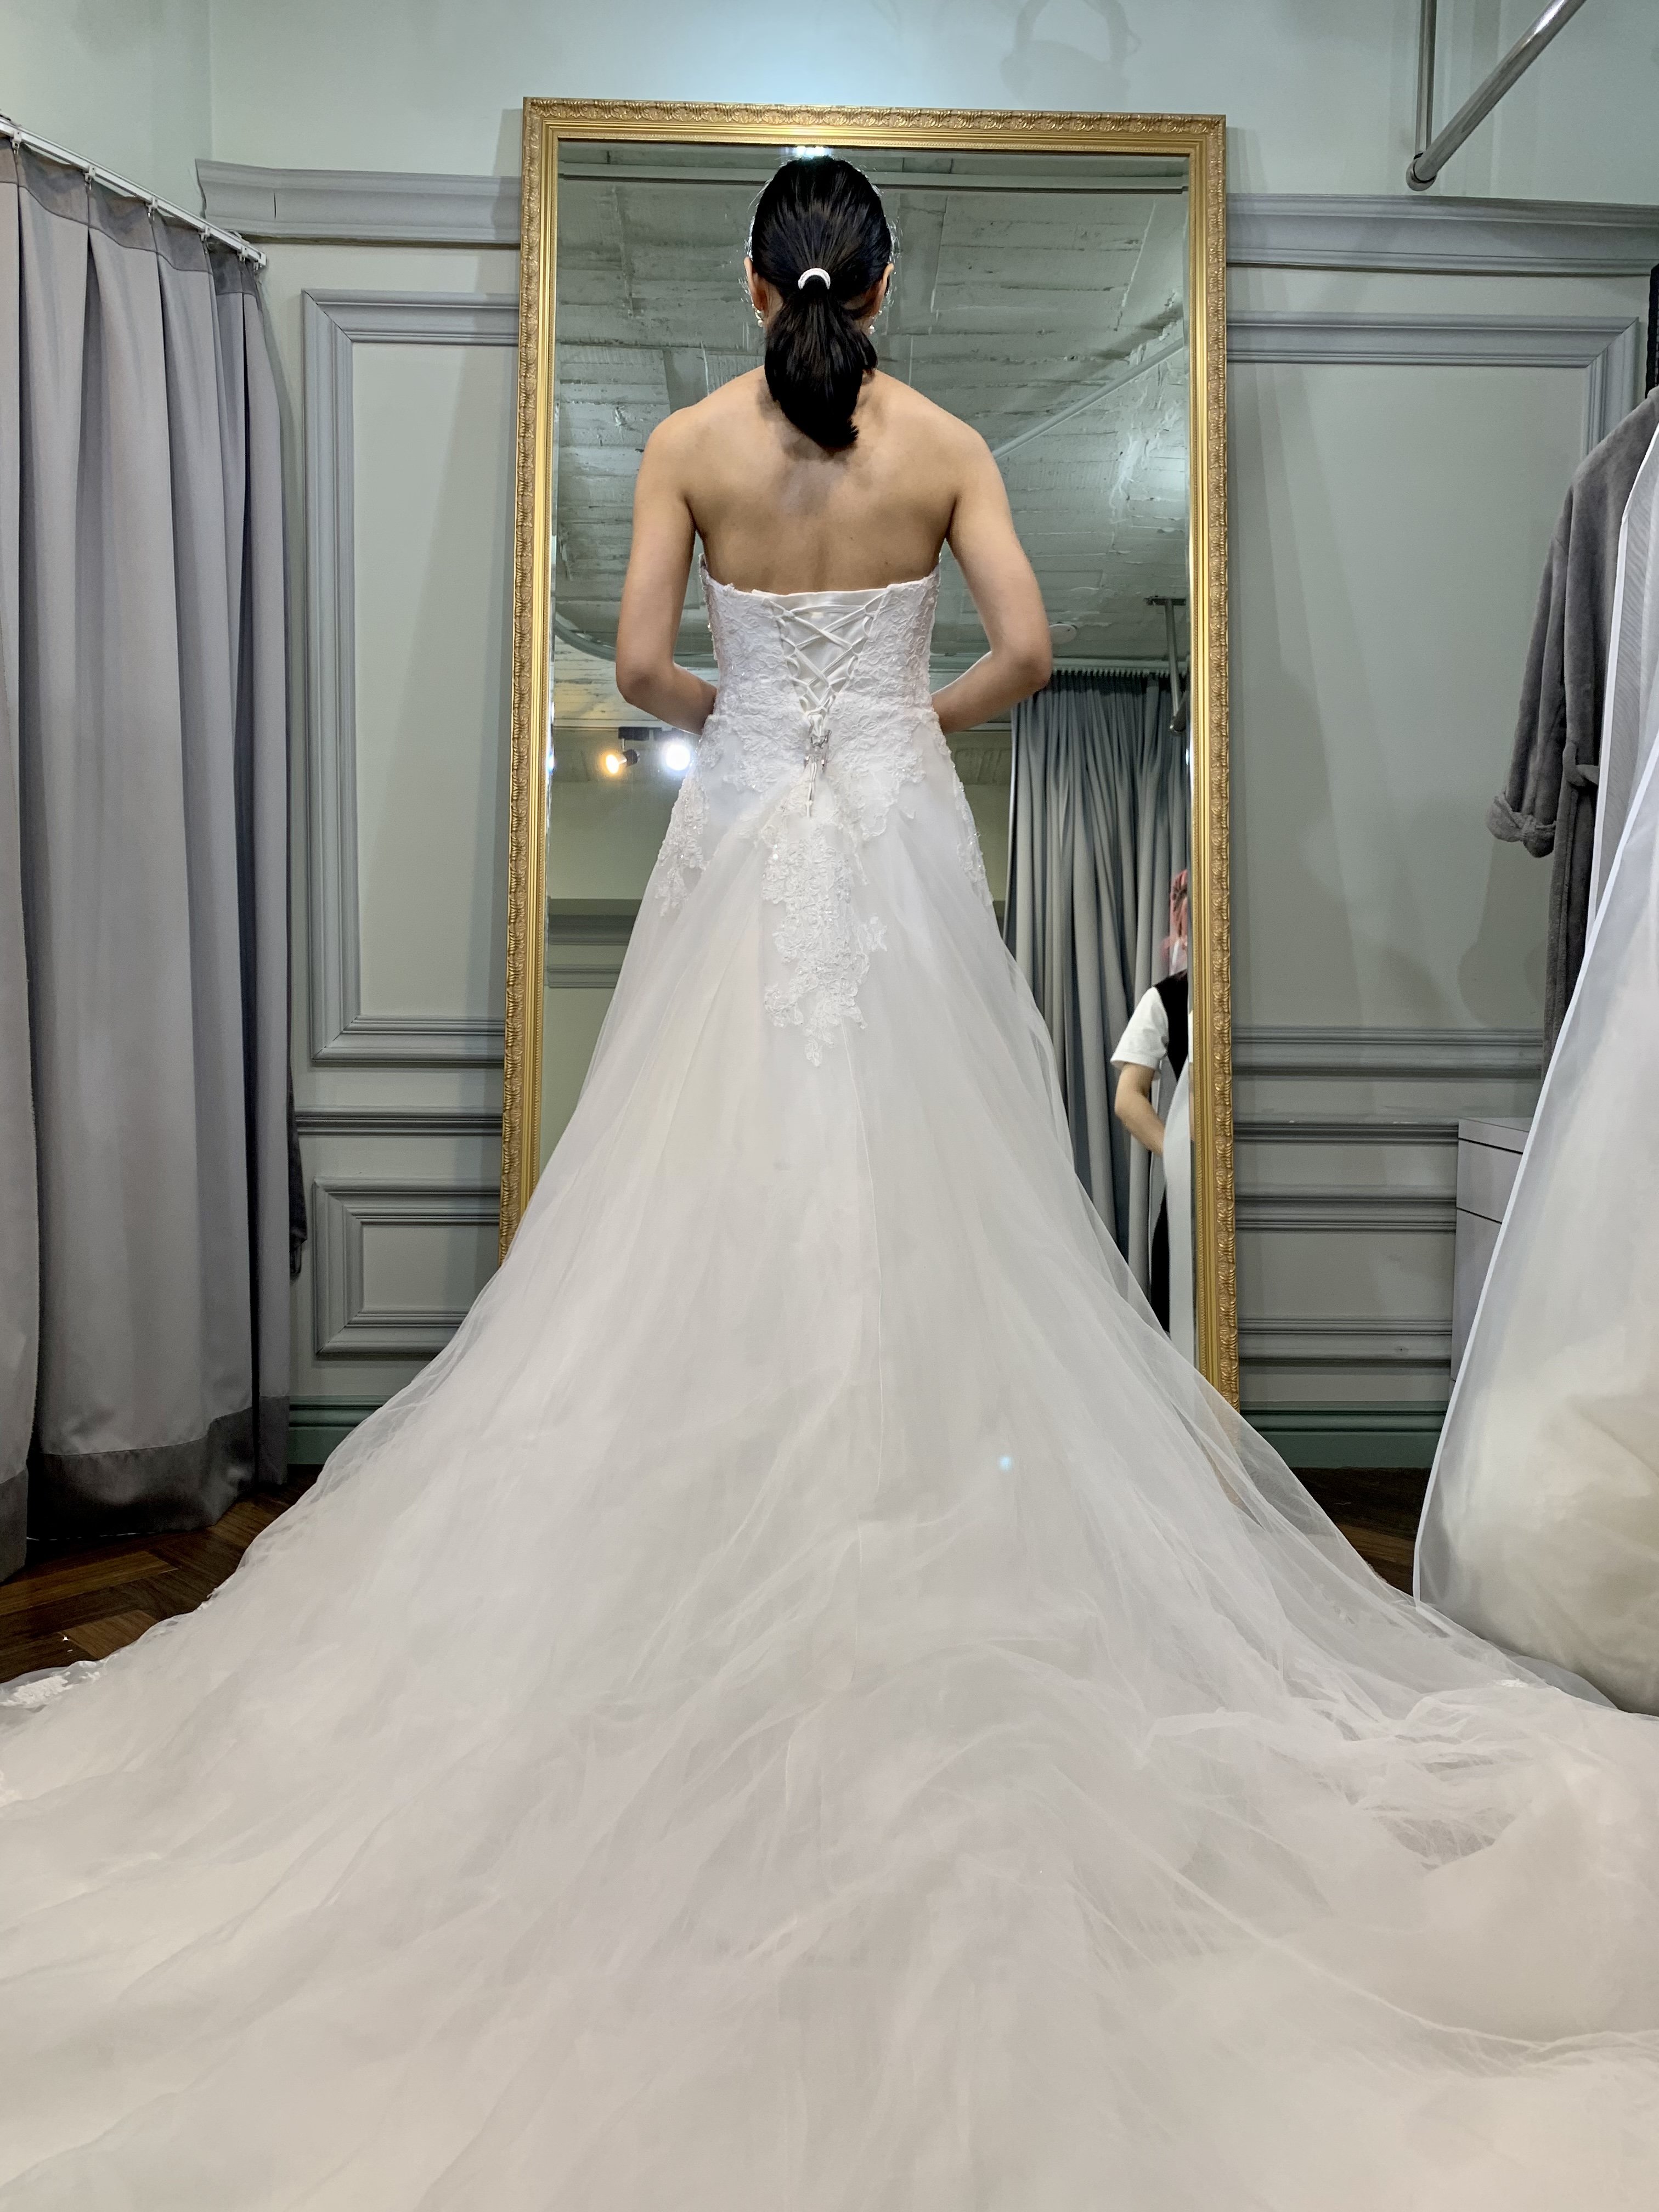 最愛禮服 Beloved Bridal - 婚紗禮服挑選經驗-婚禮廠商評價